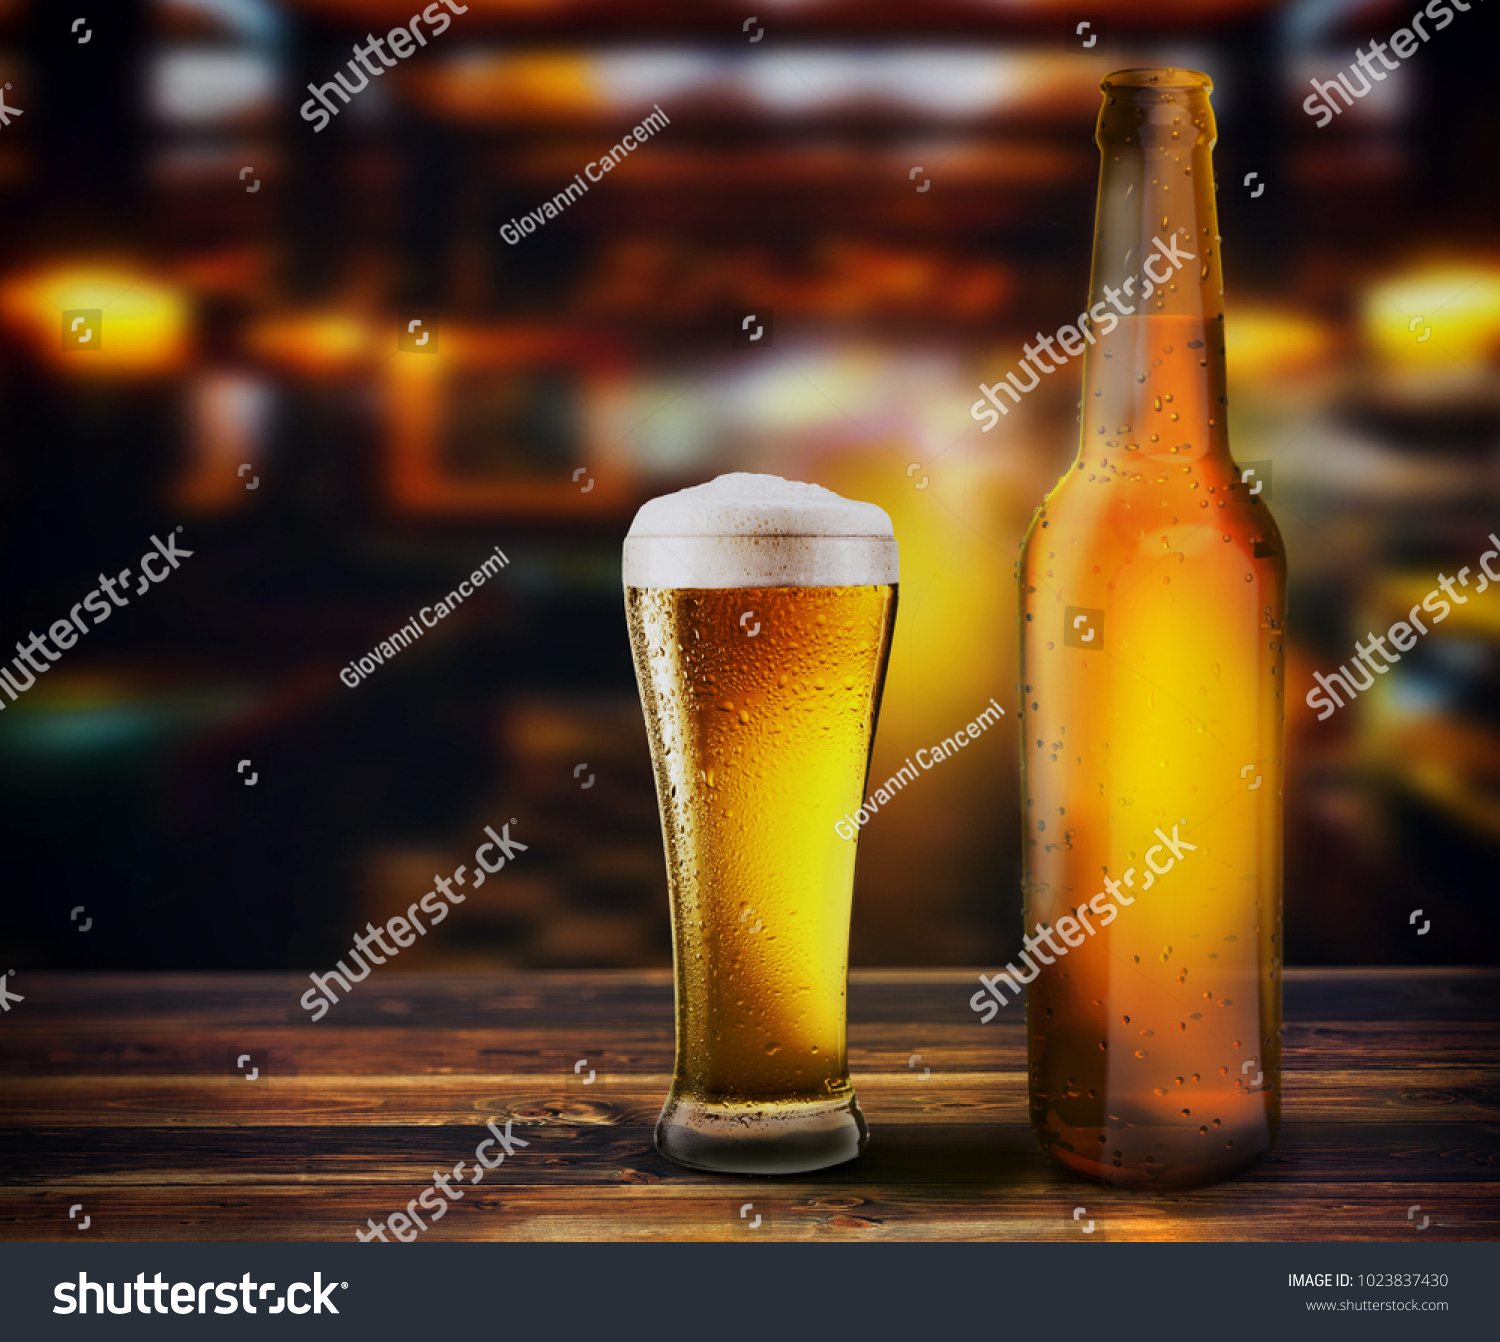 Bottle Glass Fresh Beer On Table Stock Illustration 1023837430 ...